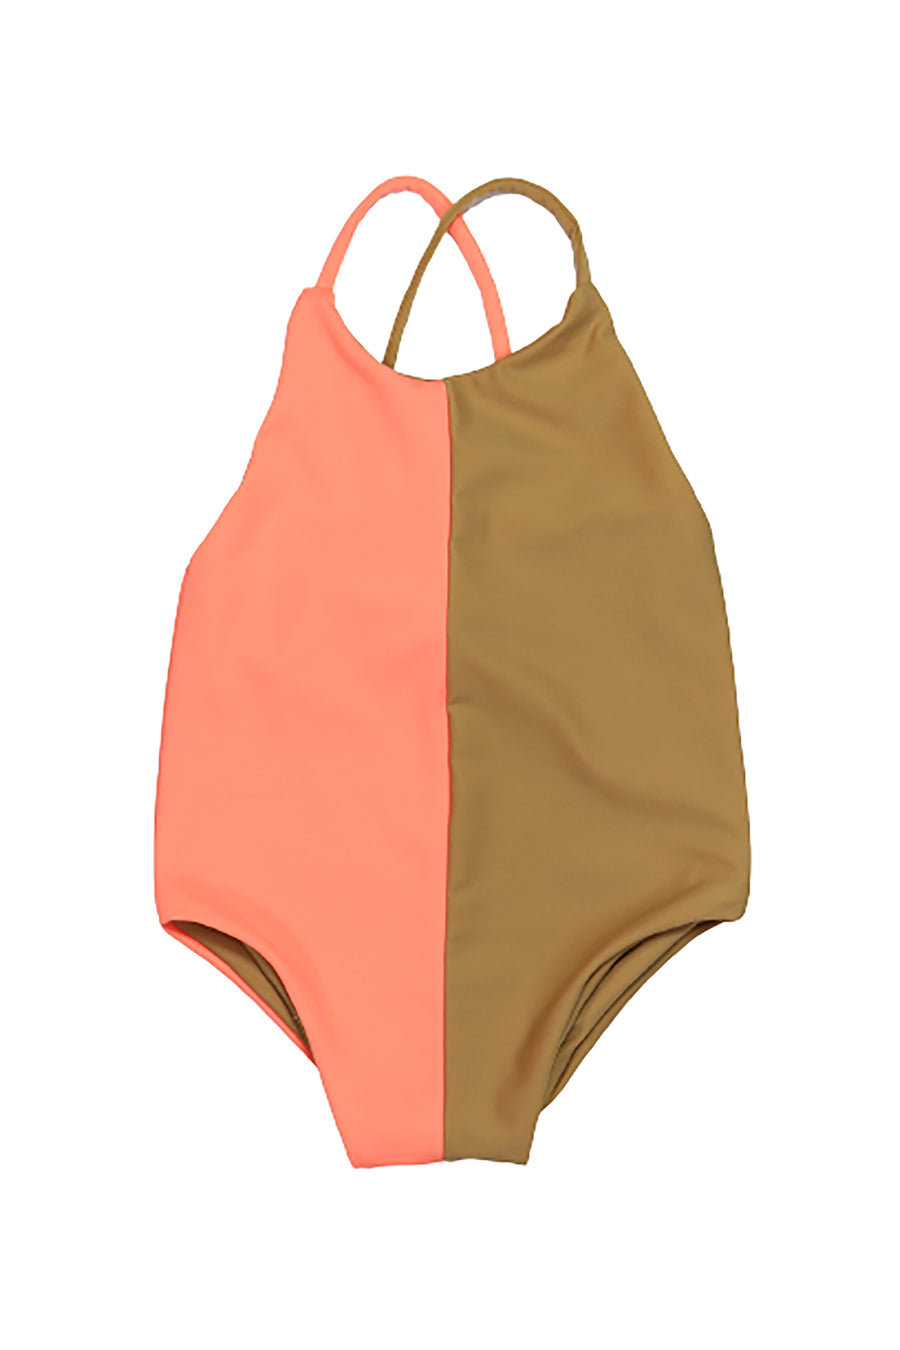 CELYNE  swimsuit  Neon pink - HOLY SHE - HOWTOKiSSAFROG